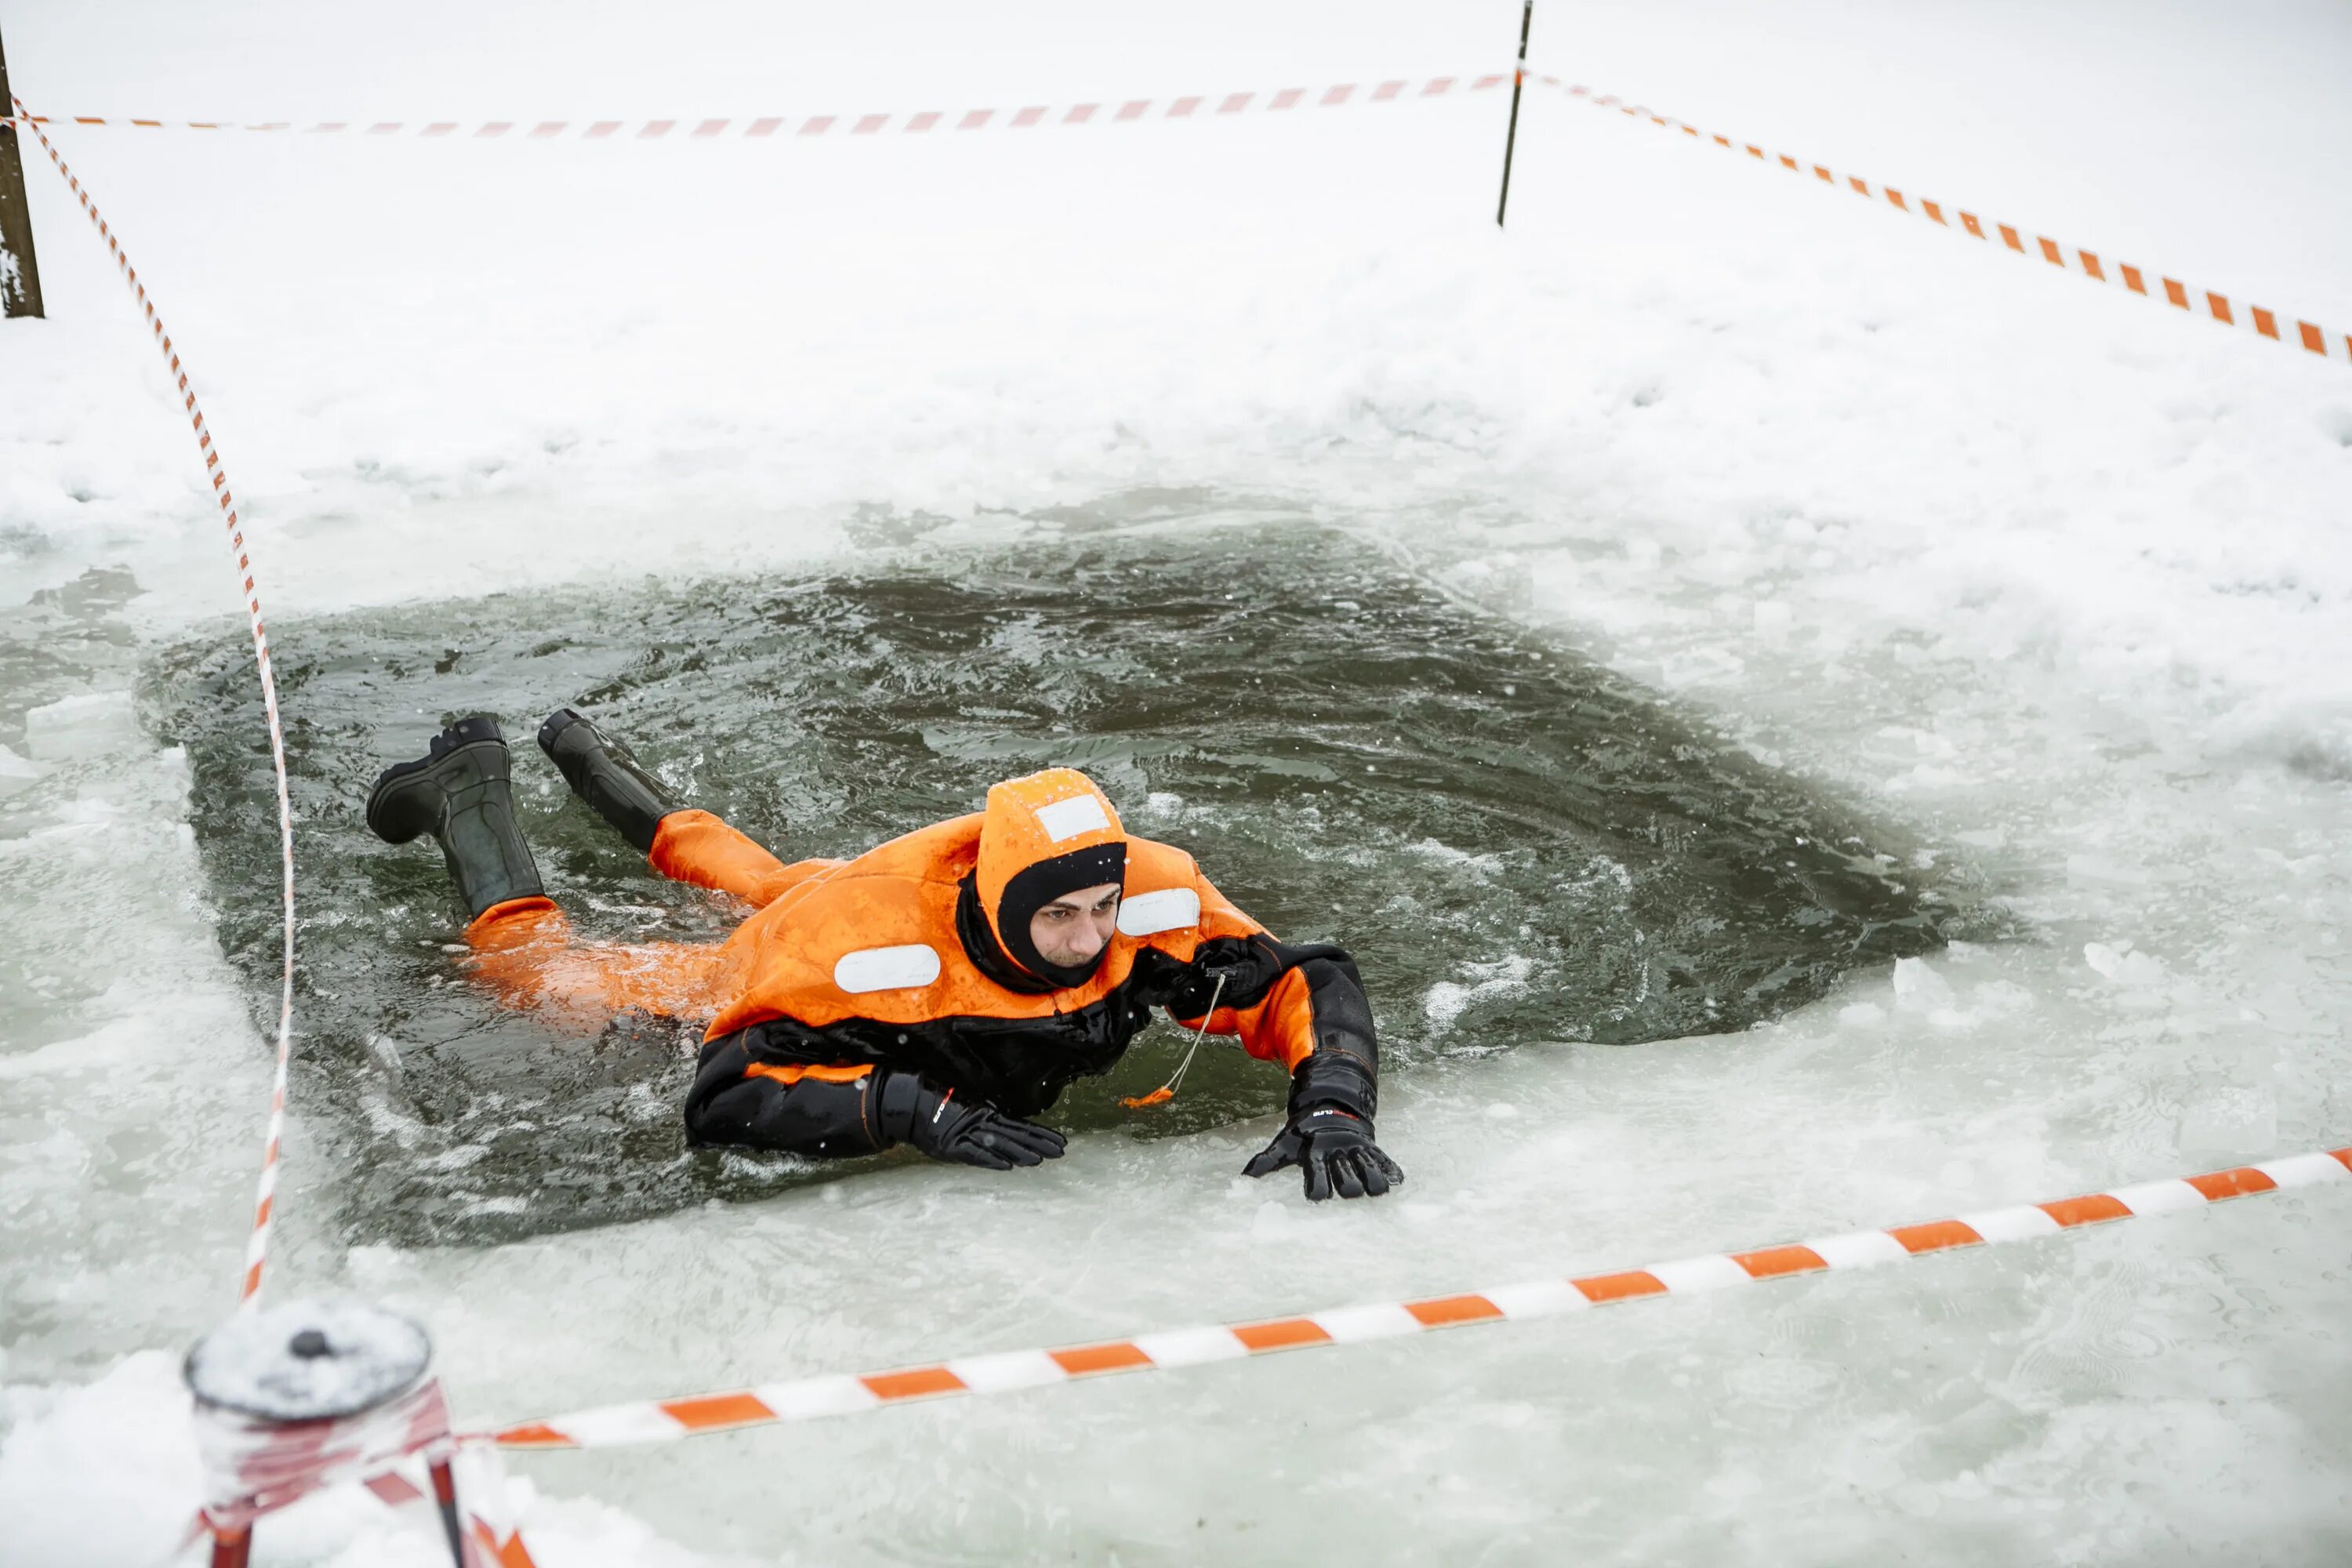 Человек провалился под лед. МЧС России спасает человека на льду. Оказание помощи провалившемуся под лед.